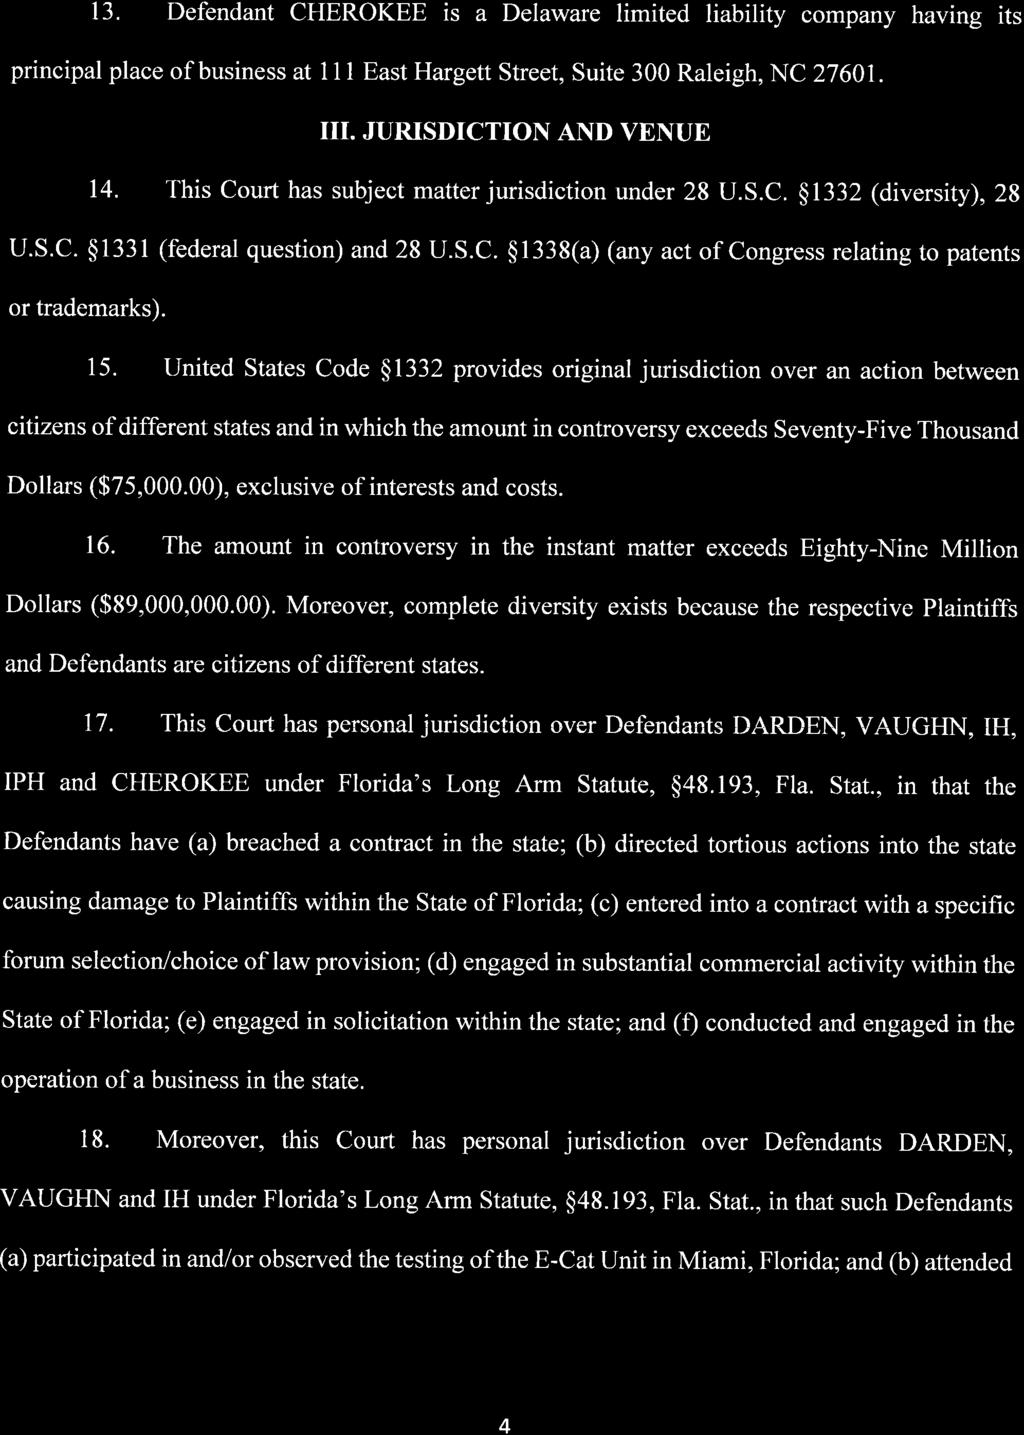 Case 1:16-cv-21199-CMA Document 1 Entered on FLSD Docket 04/05/2016 Page 4 of 27 13.